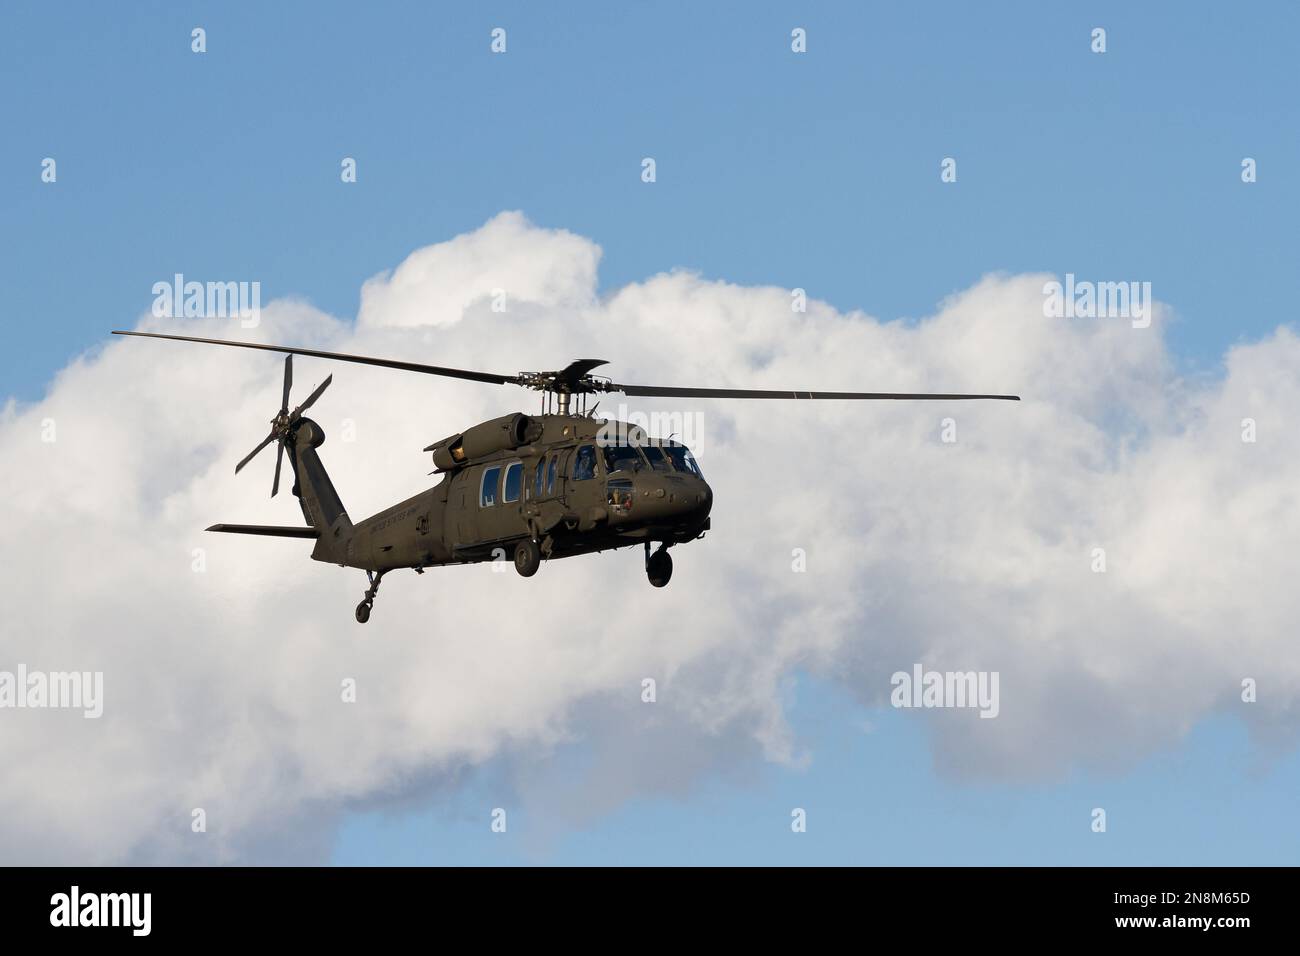 Un elicottero dell'esercito americano Sikorsky UH-60 Black Hawk che vola vicino alla base aerea navale di Atsugi, Kanagawa, Giappone. Foto Stock